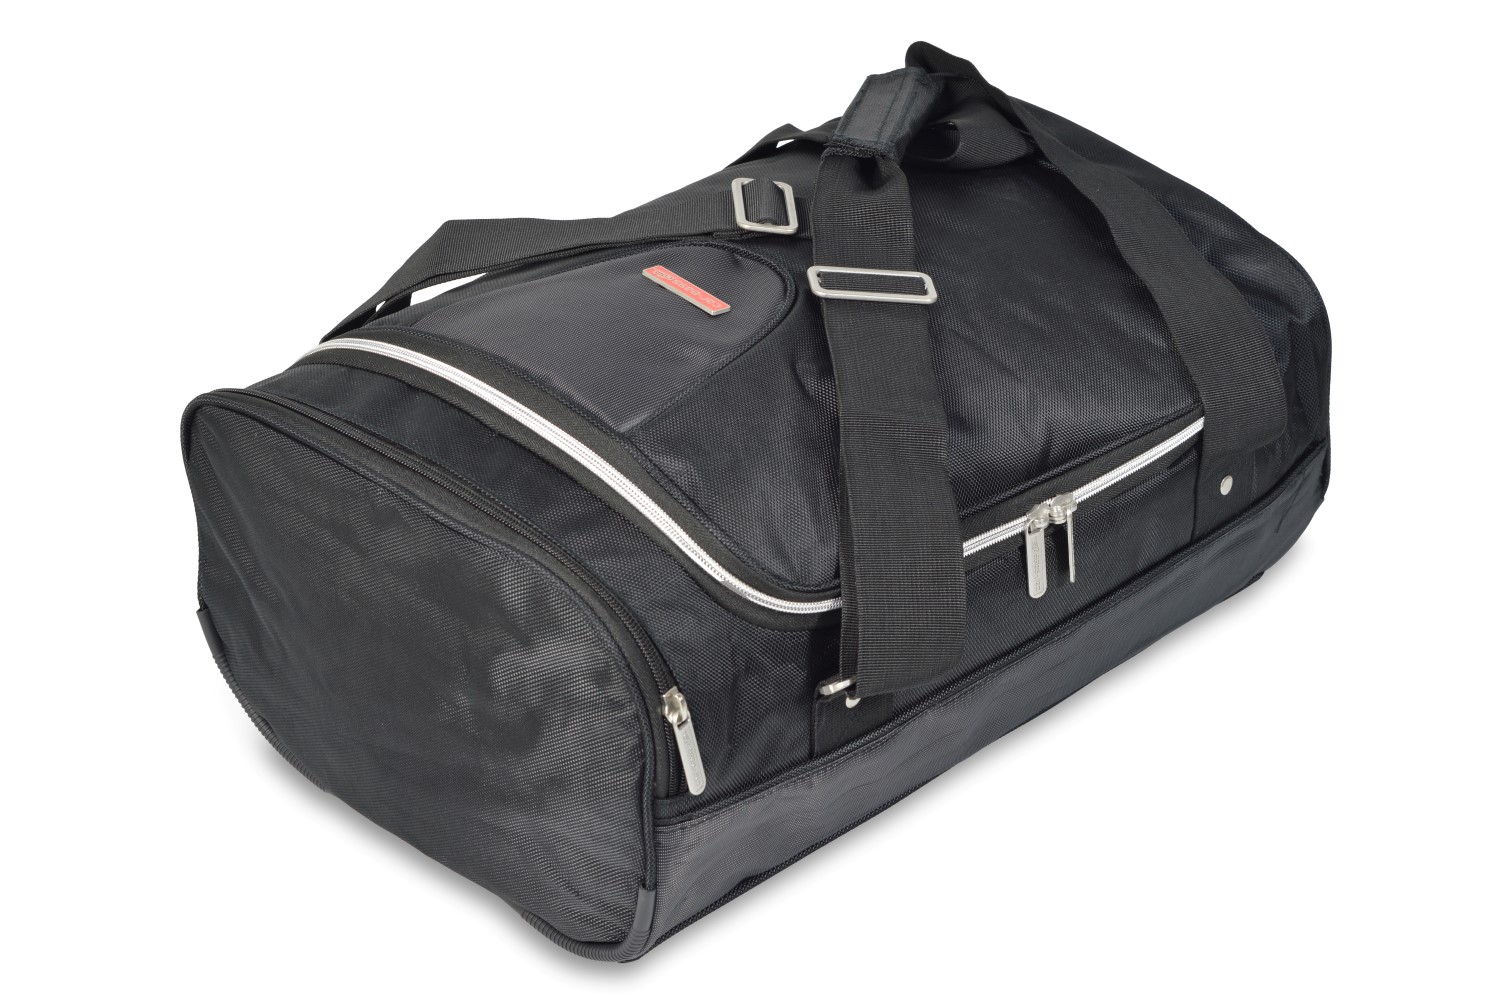 Travel bag - 31x21x50cm (WxHxL)